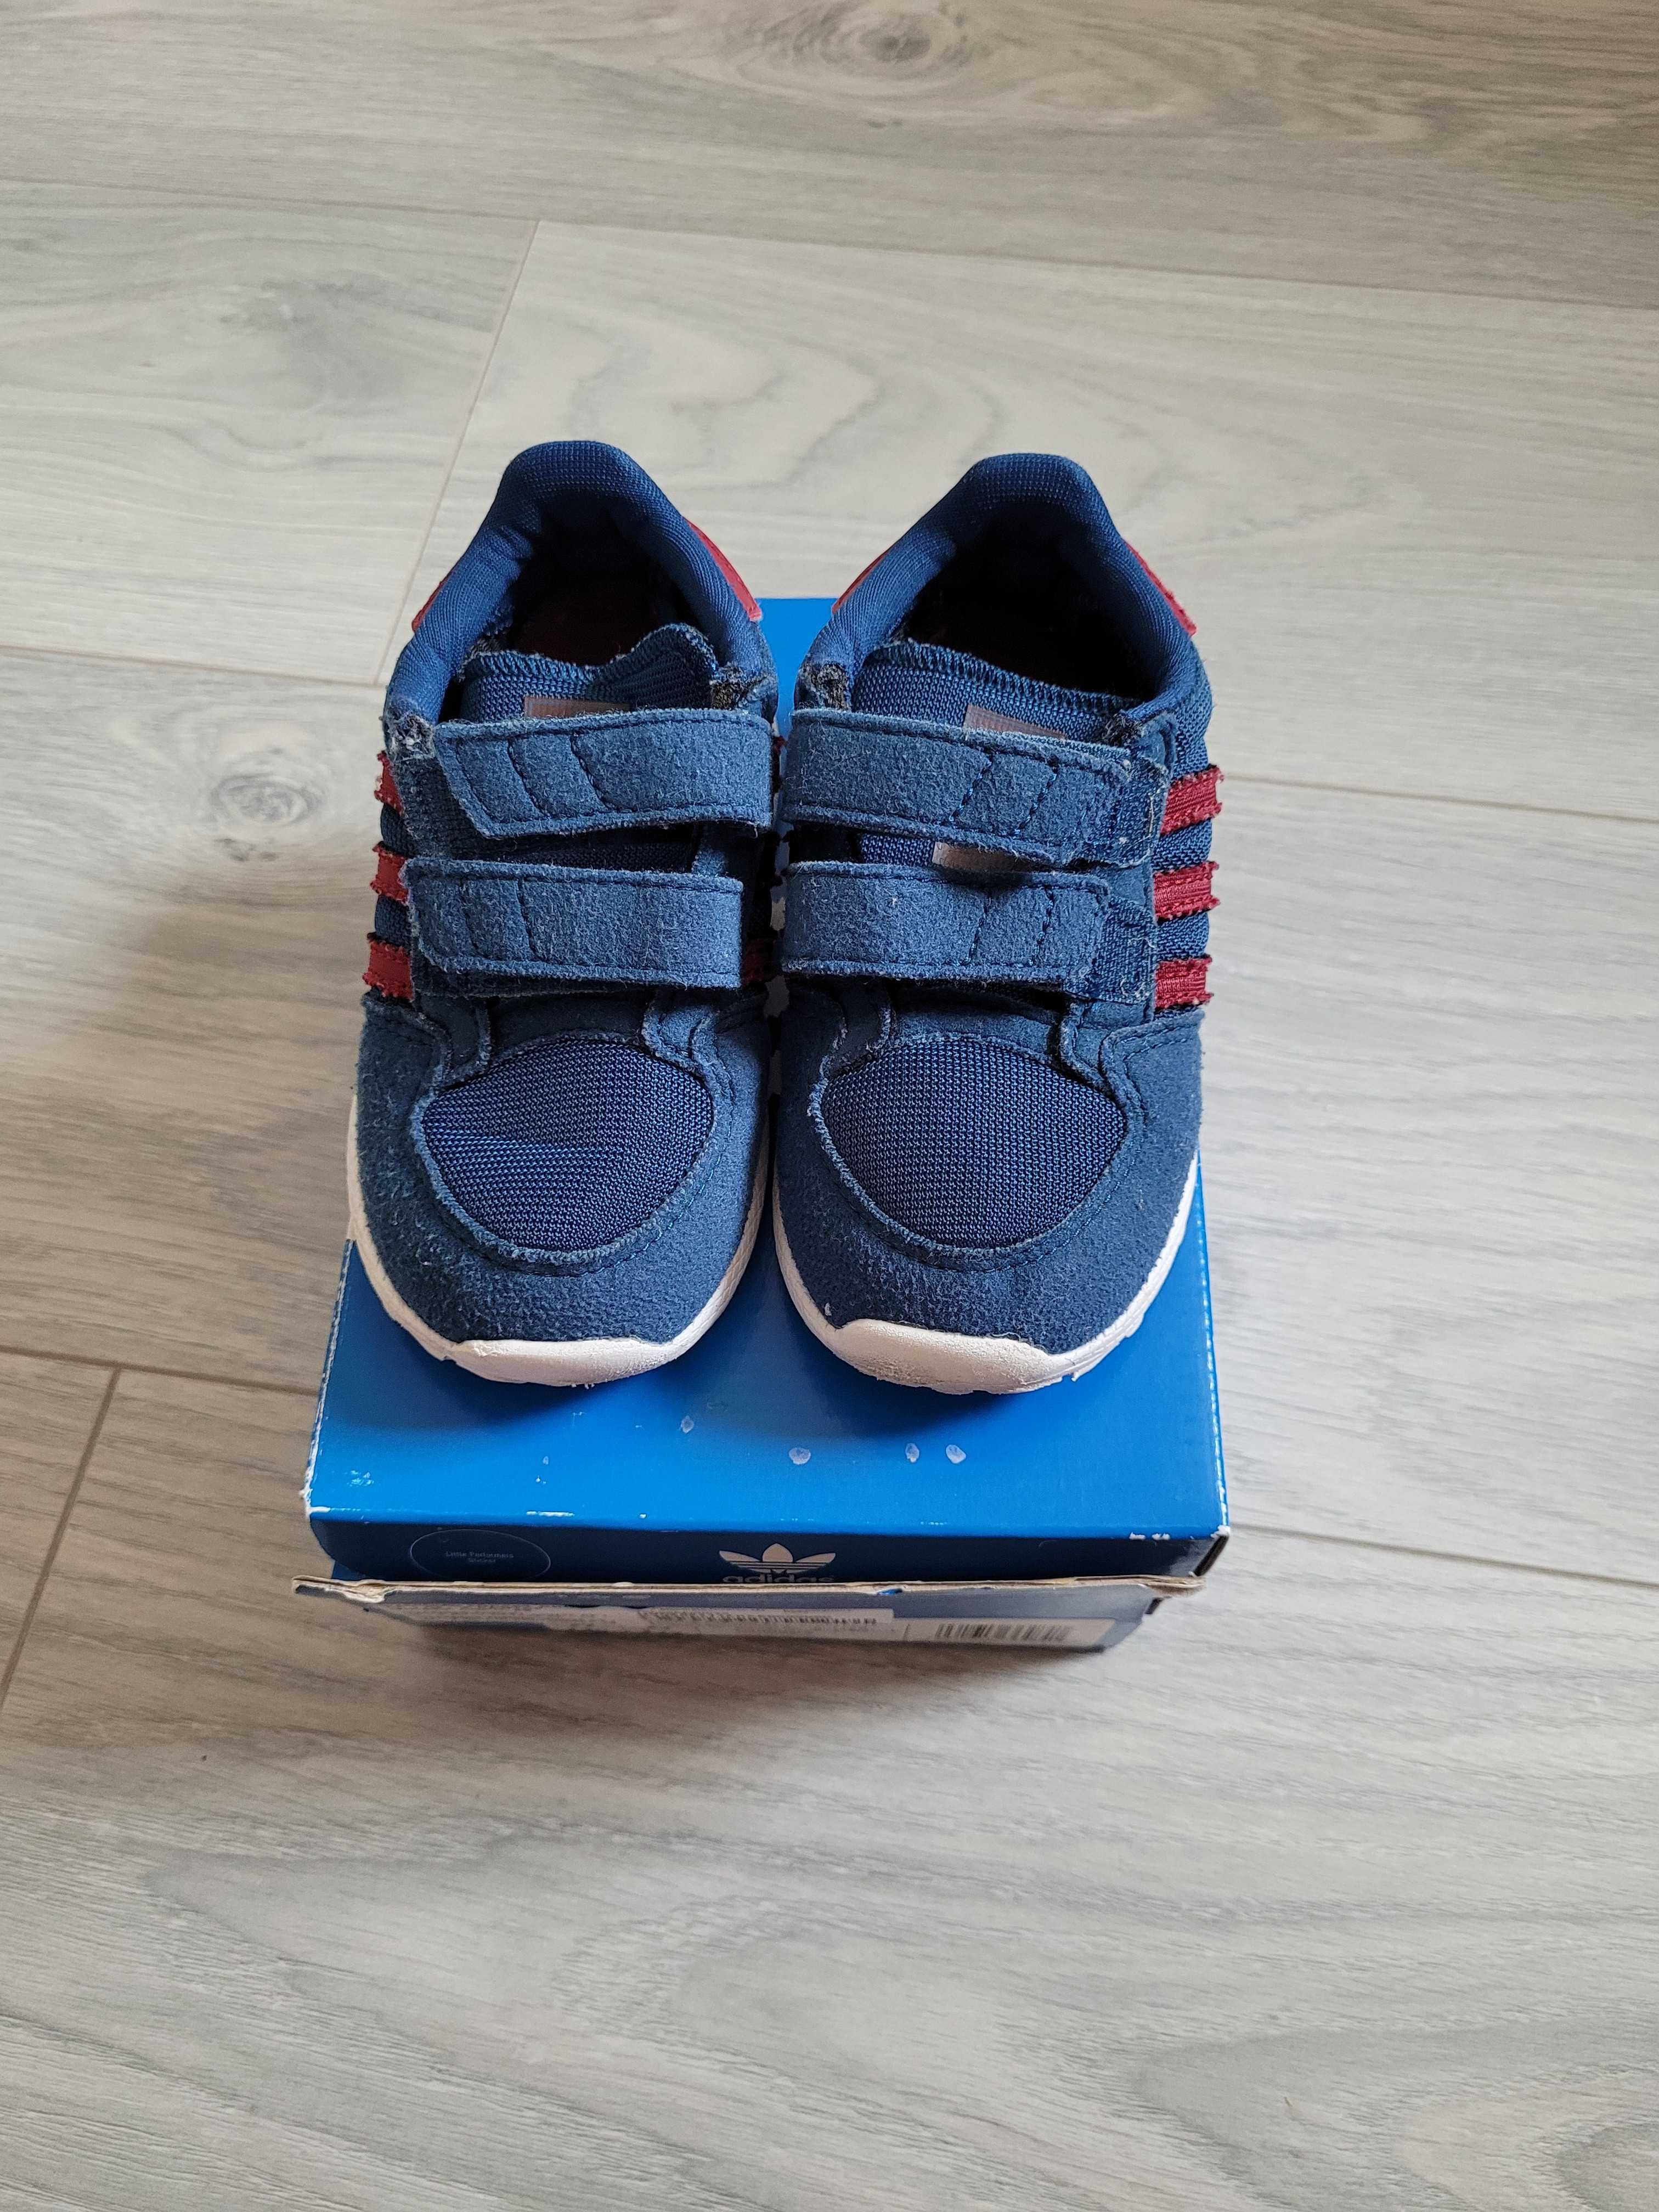 24. Pantofi copii Adidas, albastru purtati, masura 22 - 30 Ron